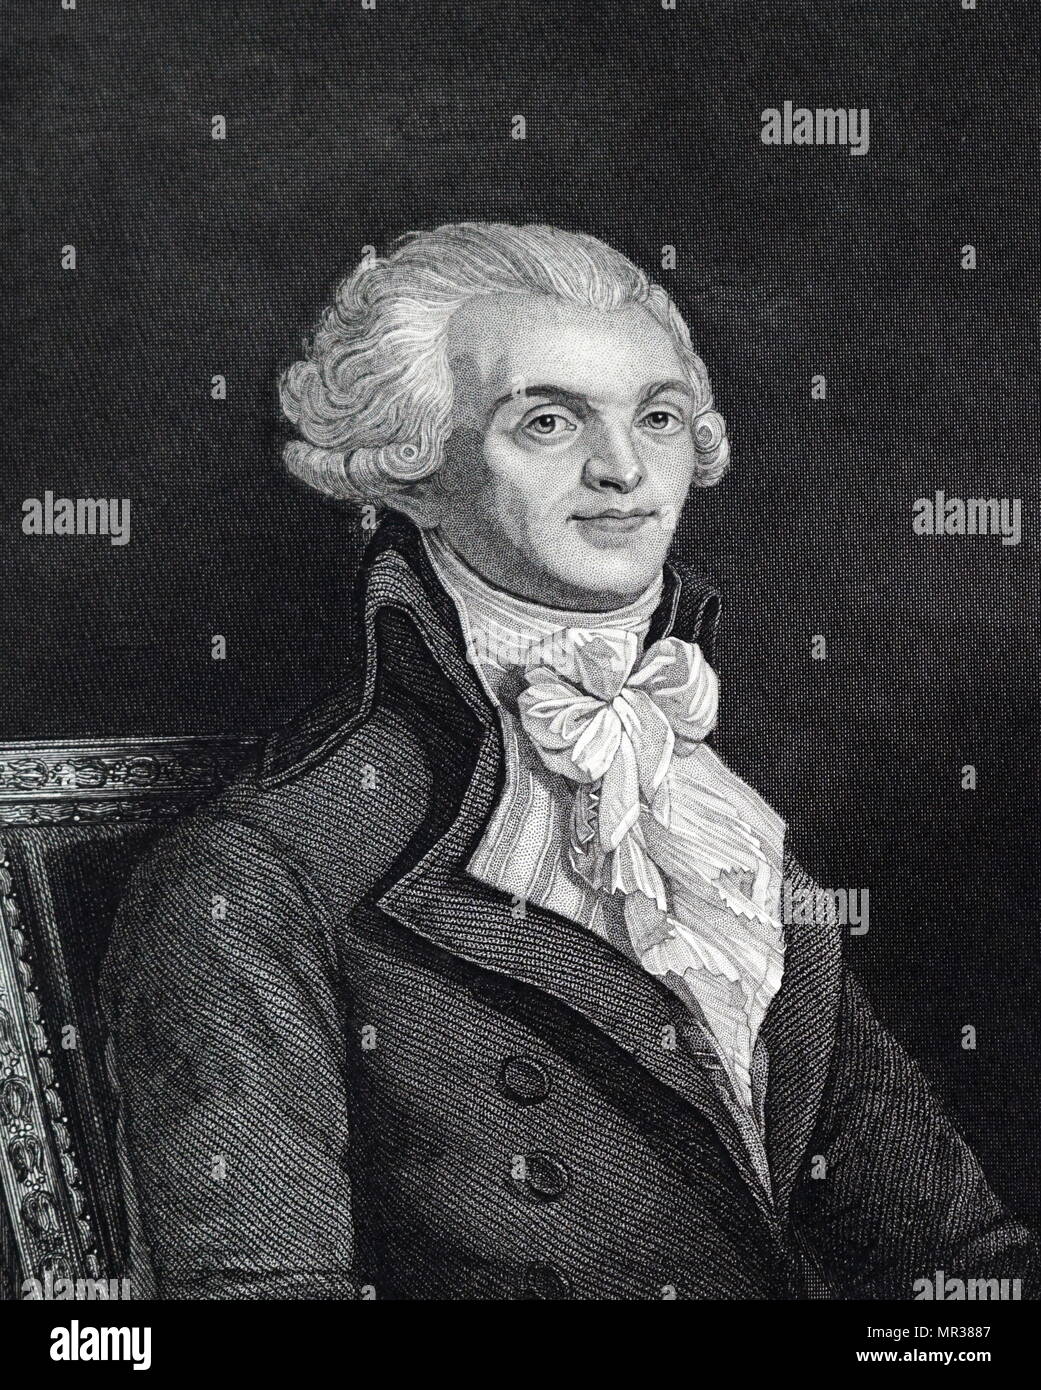 Abbildung: Darstellung von Maximilien Robespierre (1758-1794), ein französischer Jurist und Politiker, einer der bekanntesten und einflussreichsten Persönlichkeiten mit der französischen Revolution und der Herrschaft des Terrors. Vom 18. Jahrhundert Stockfoto